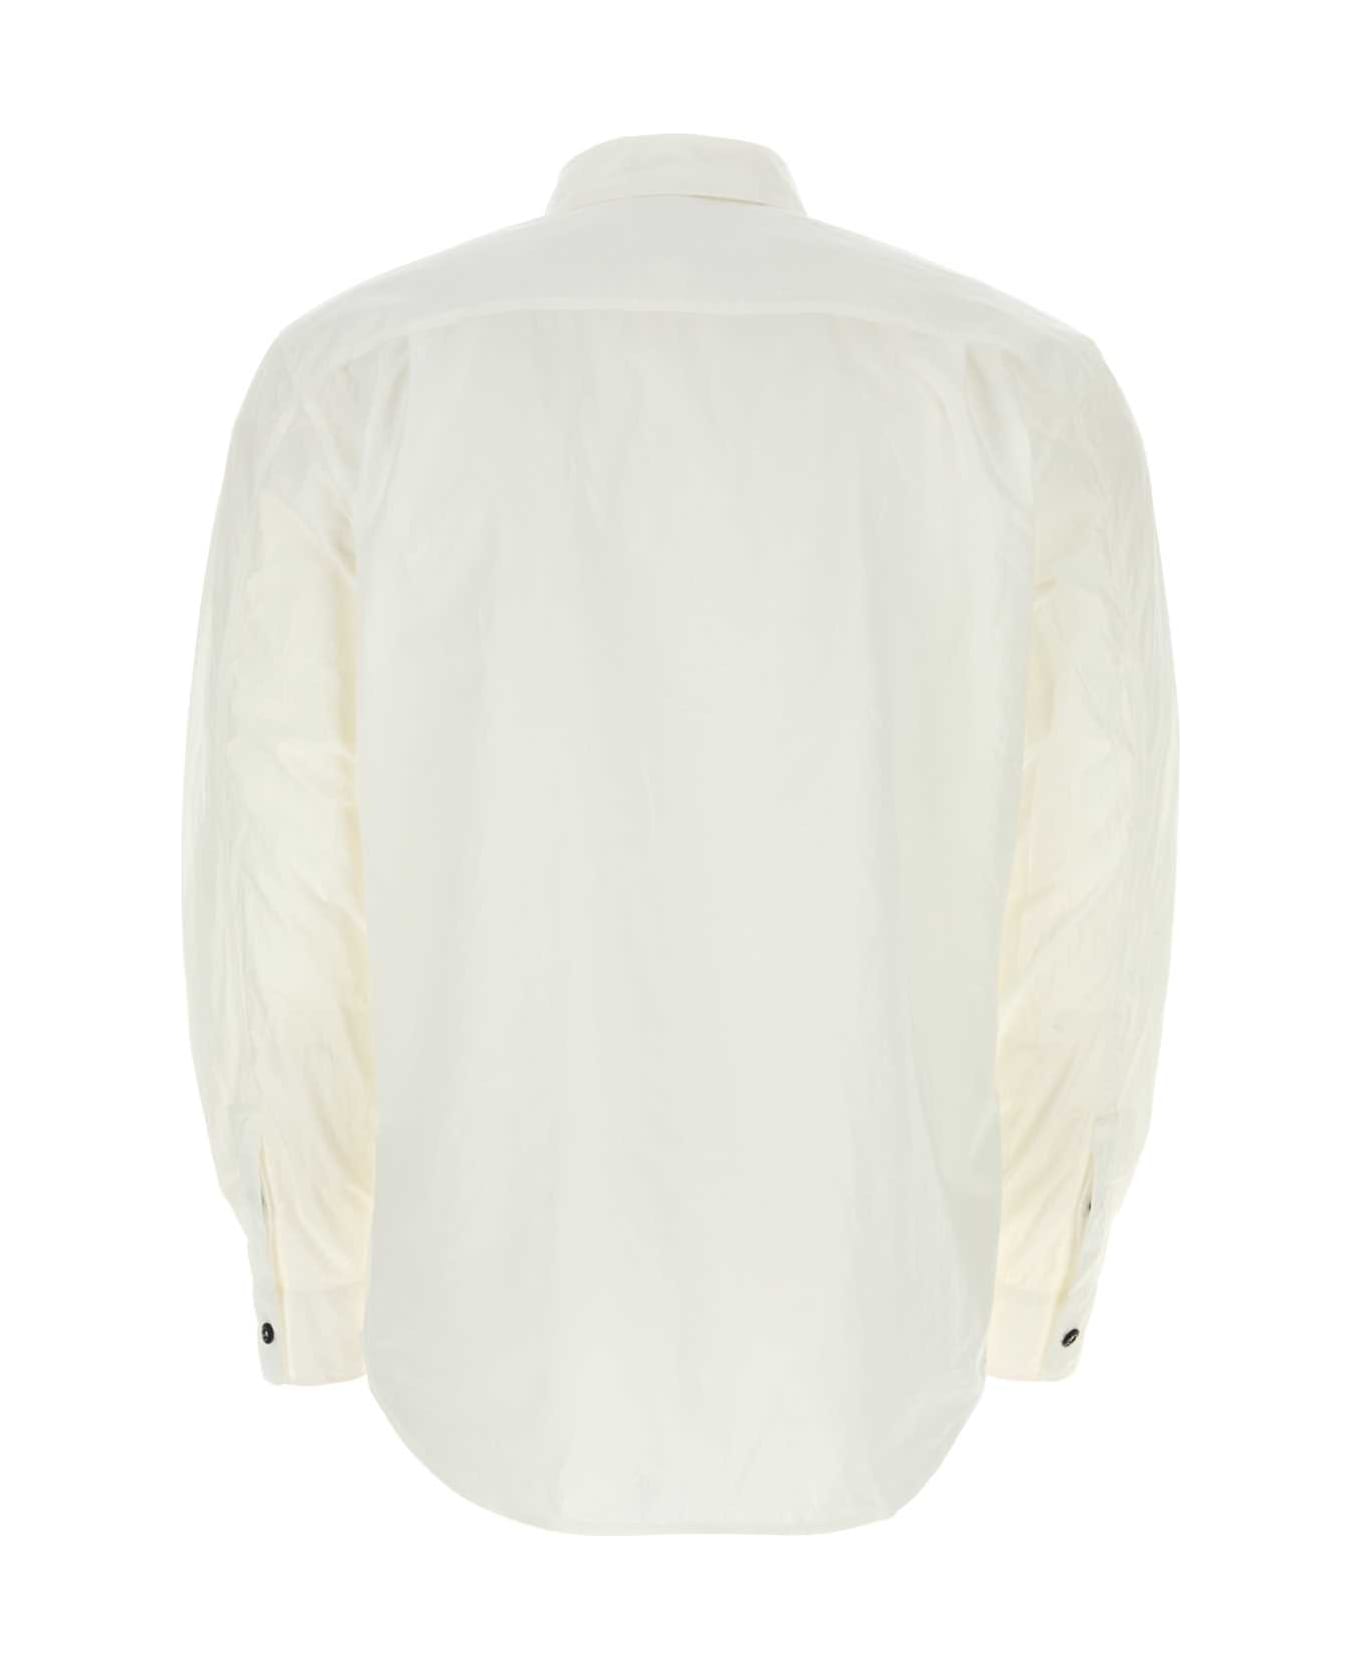 Stone Island White Cotton Shirt - Bianco ニットウェア